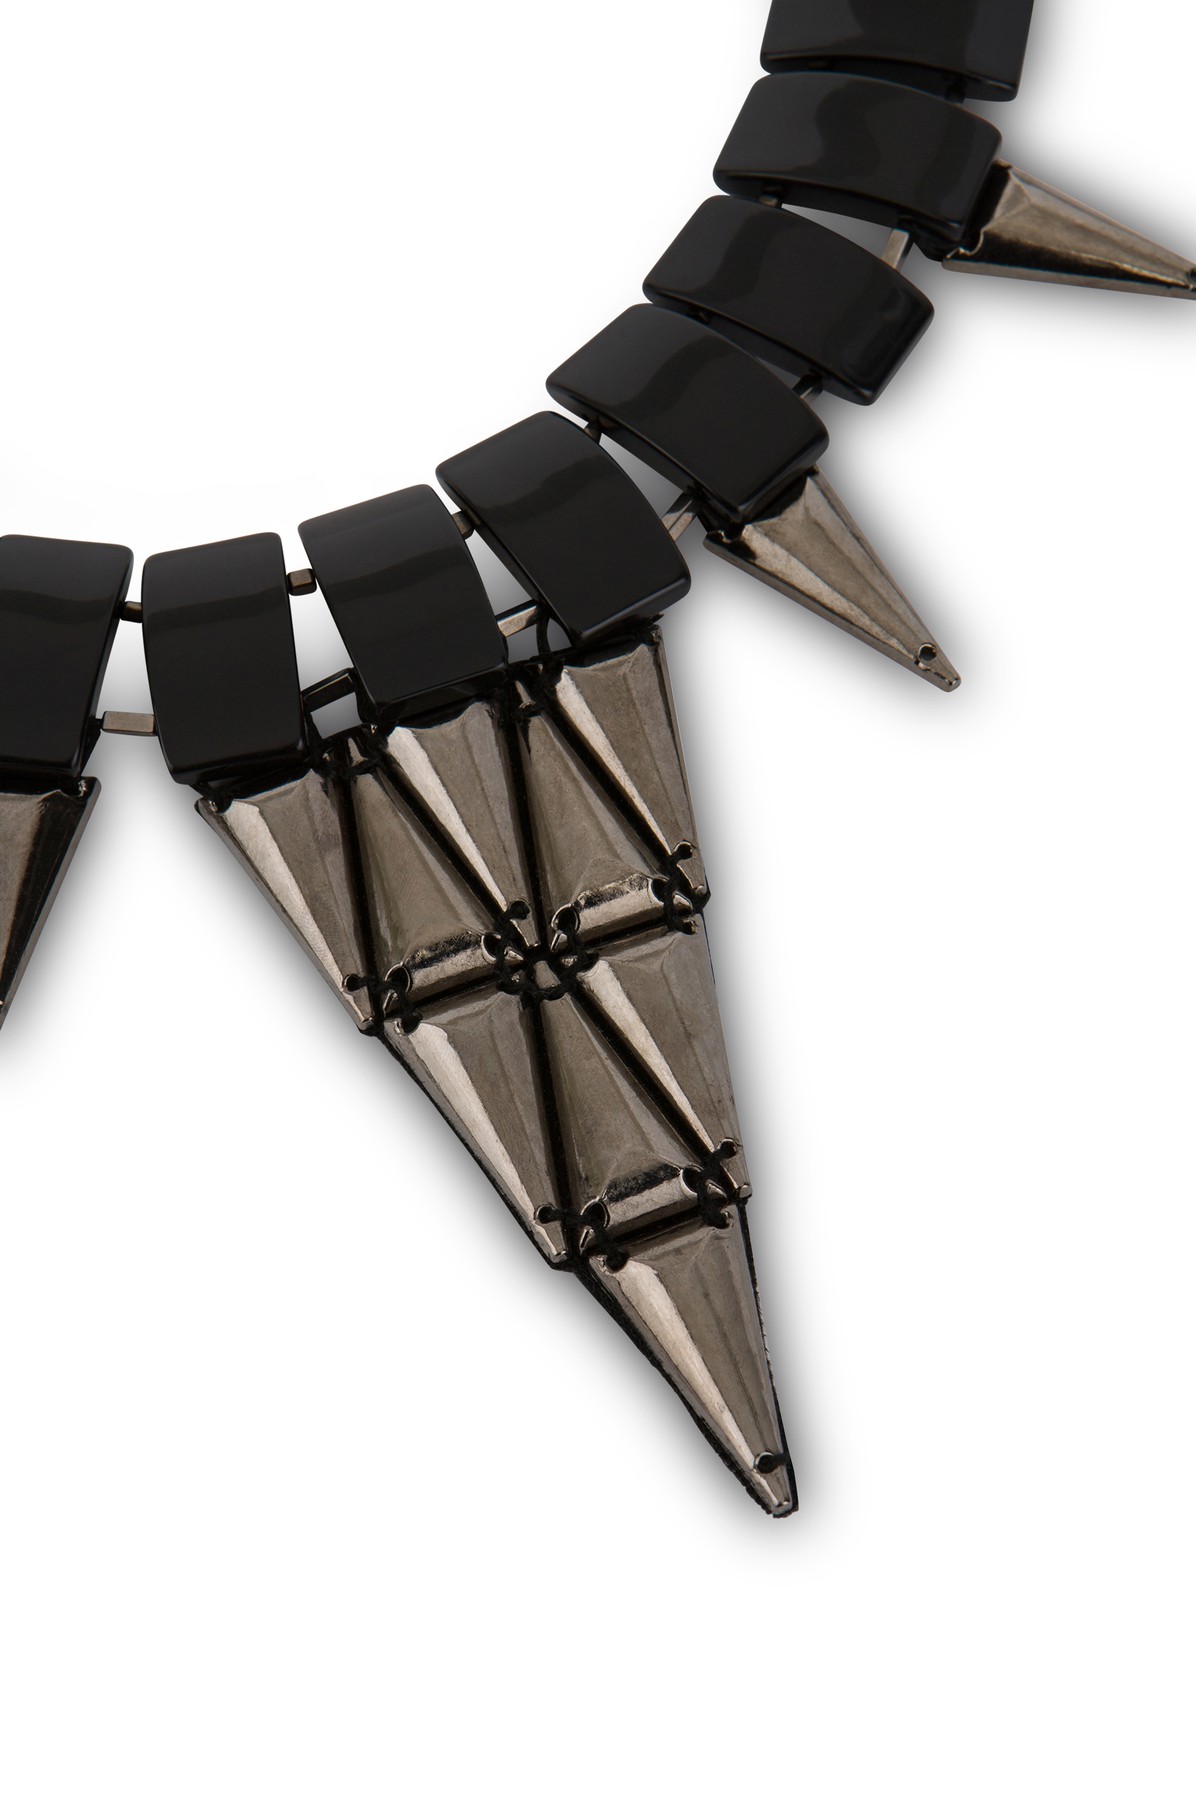 Alberta Ferretti PVC and metal necklace